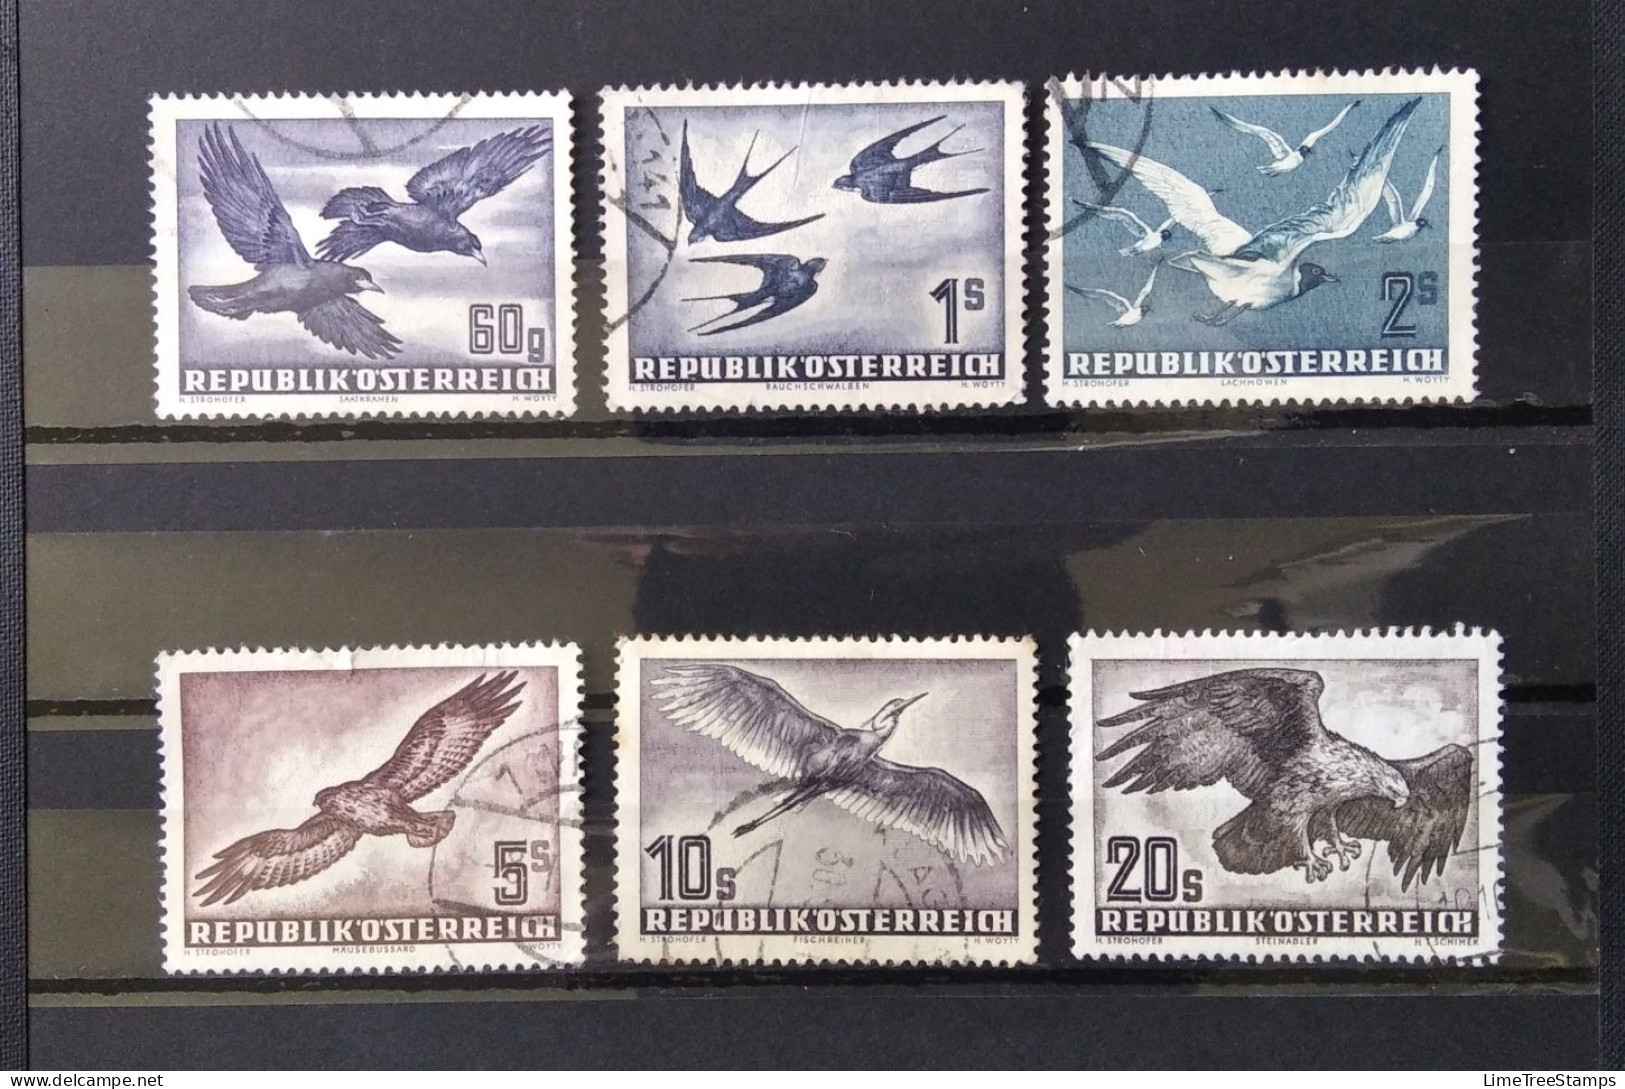 AUSTRIA 1950-53 Air Post Stamps Birds Used - Oblitérés